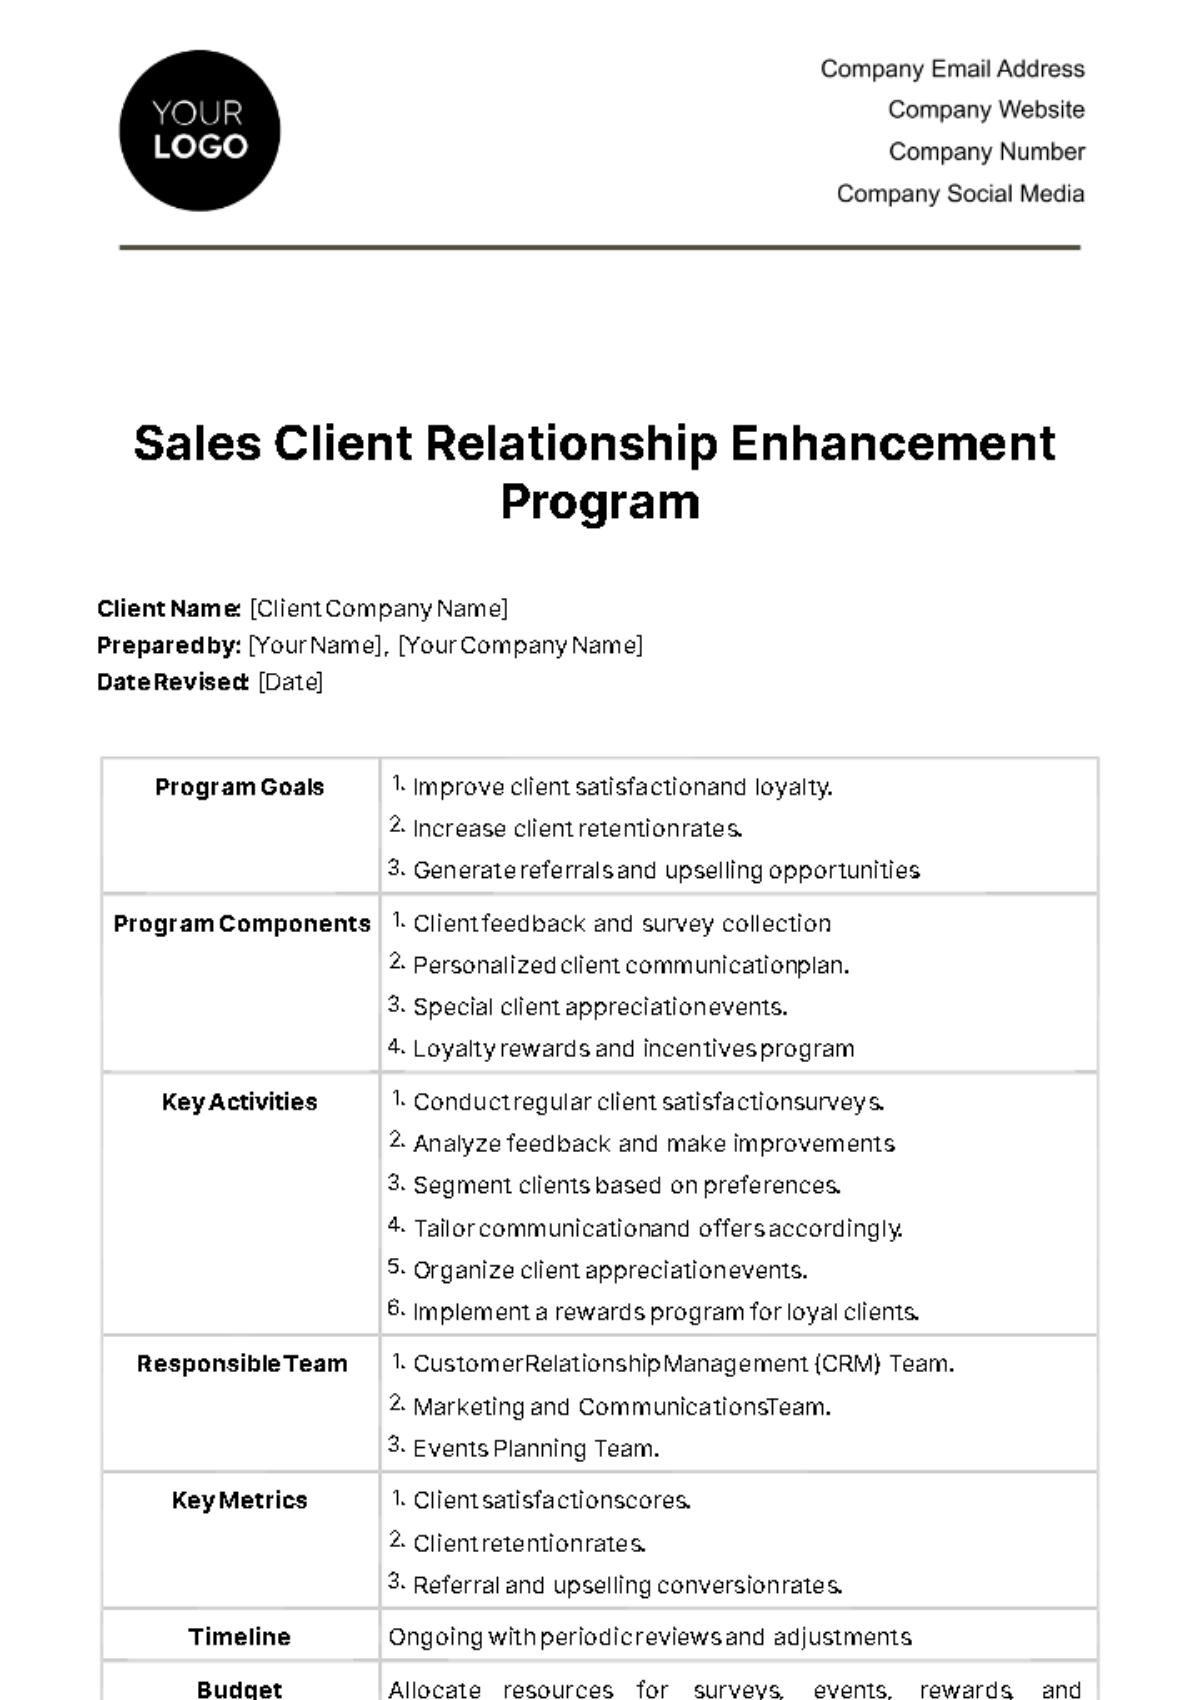 Sales Client Relationship Enhancement Program Template